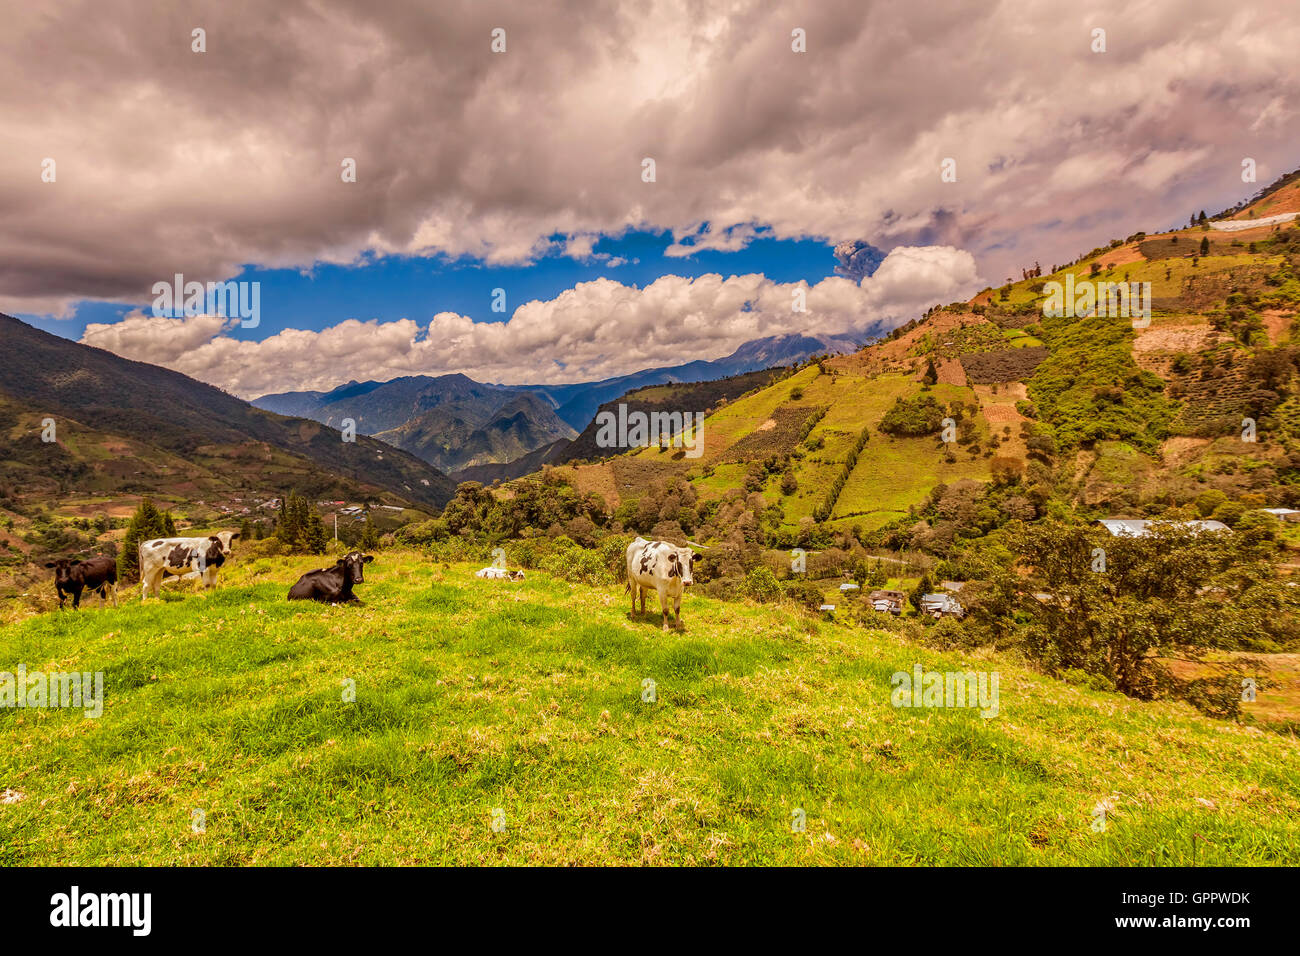 Las vacas que pastan en un prado verde, la irrupción de la nube de cenizas del volcán Tungurahua, en el fondo, Ecuador, Sudamérica Foto de stock